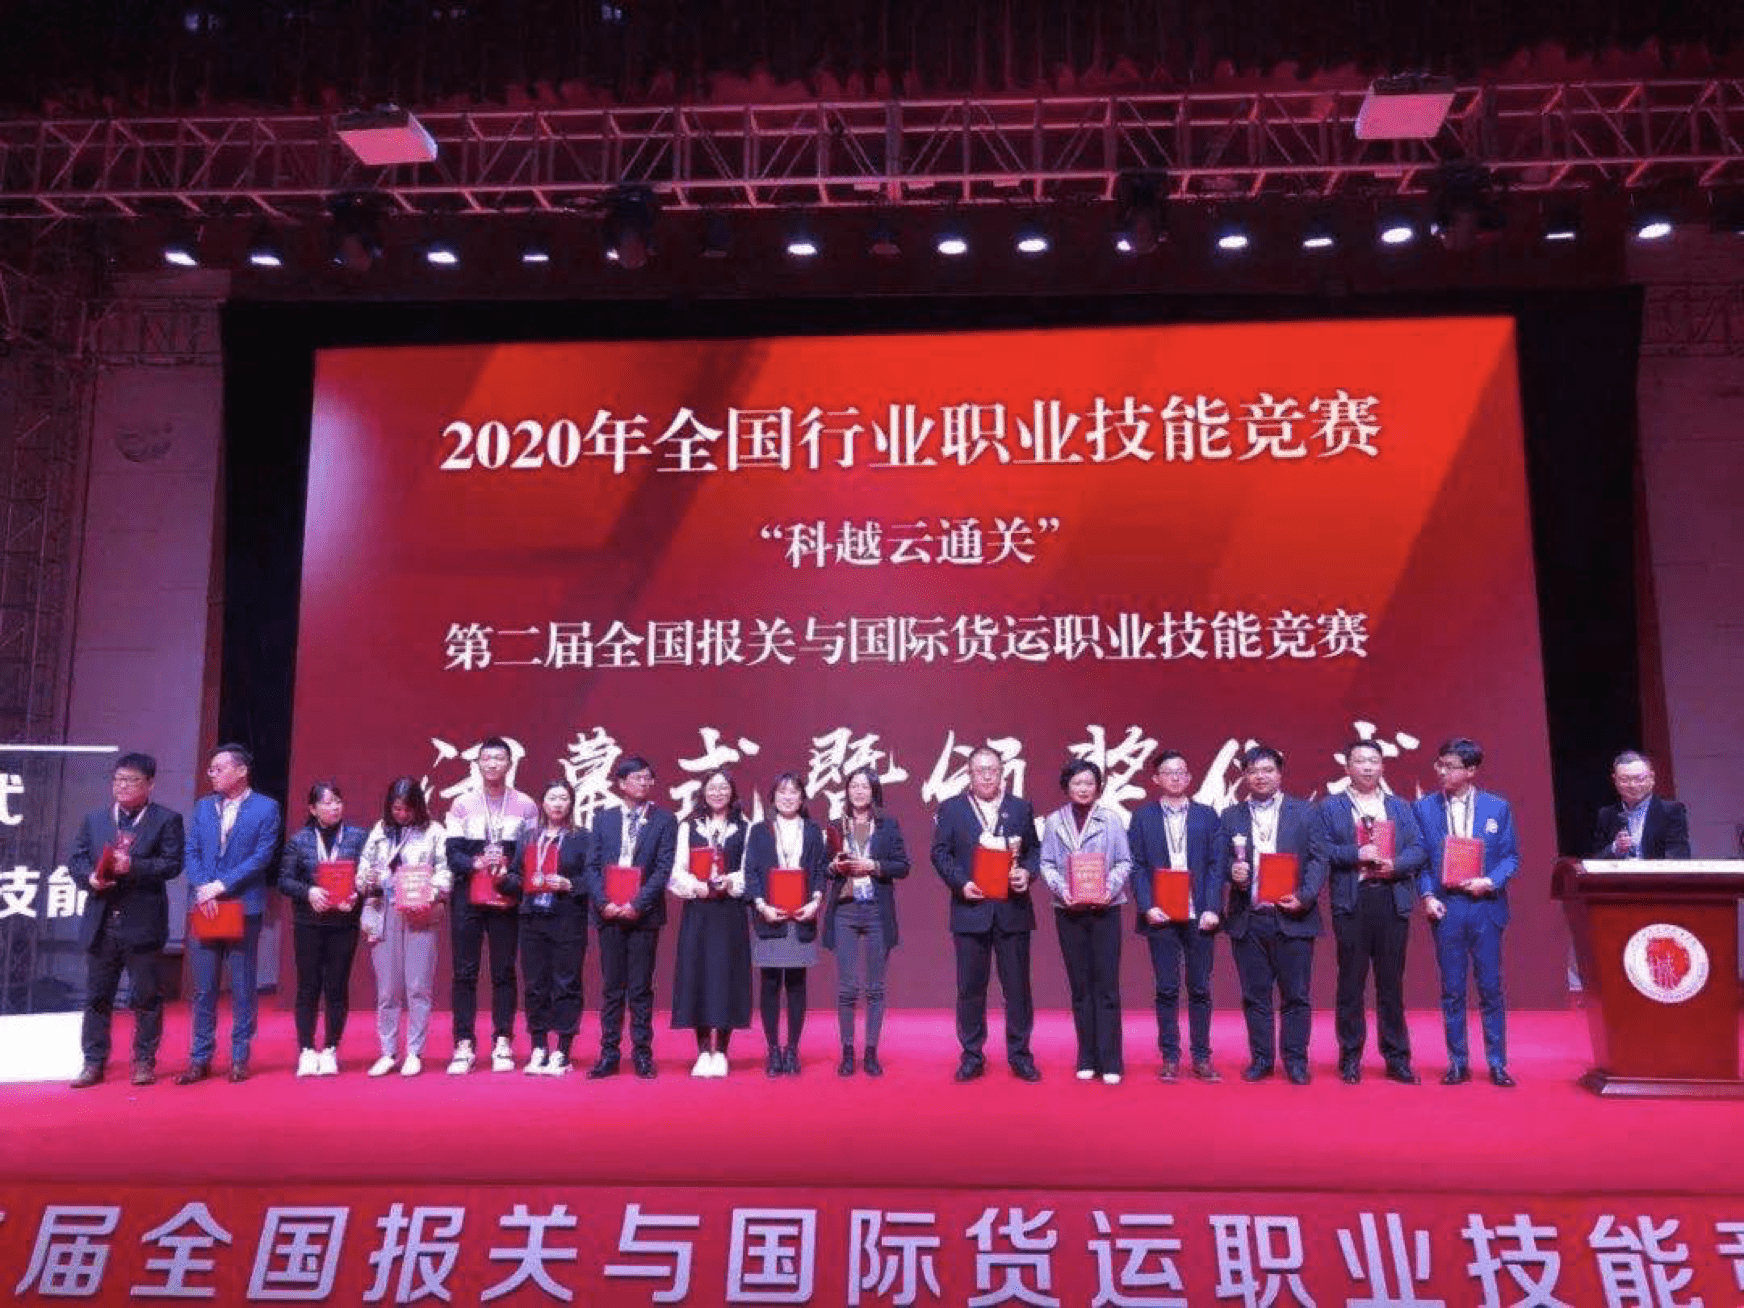 2020 नेशनल इंडस्ट्री वोकेशनल स्किल्स कॉम्पिटिशन” का आयोजन चोंगकिंग में CCBA और ओजियन ग्रुप द्वारा किया गया था